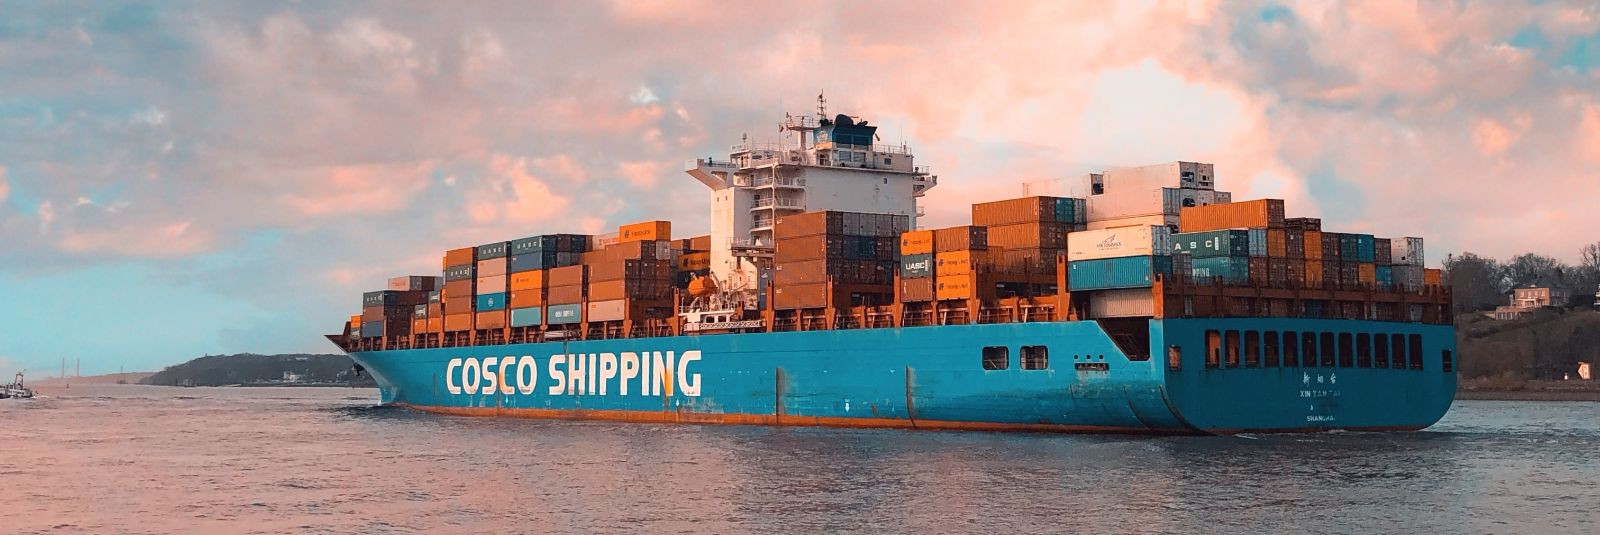 Merevedu on üks maailma kõige olulisemaid kaubaveo vorme, mis võimaldab kaupade transportimist suurtes kogustes ja pikemate vahemaade taha. See on eriti oluline